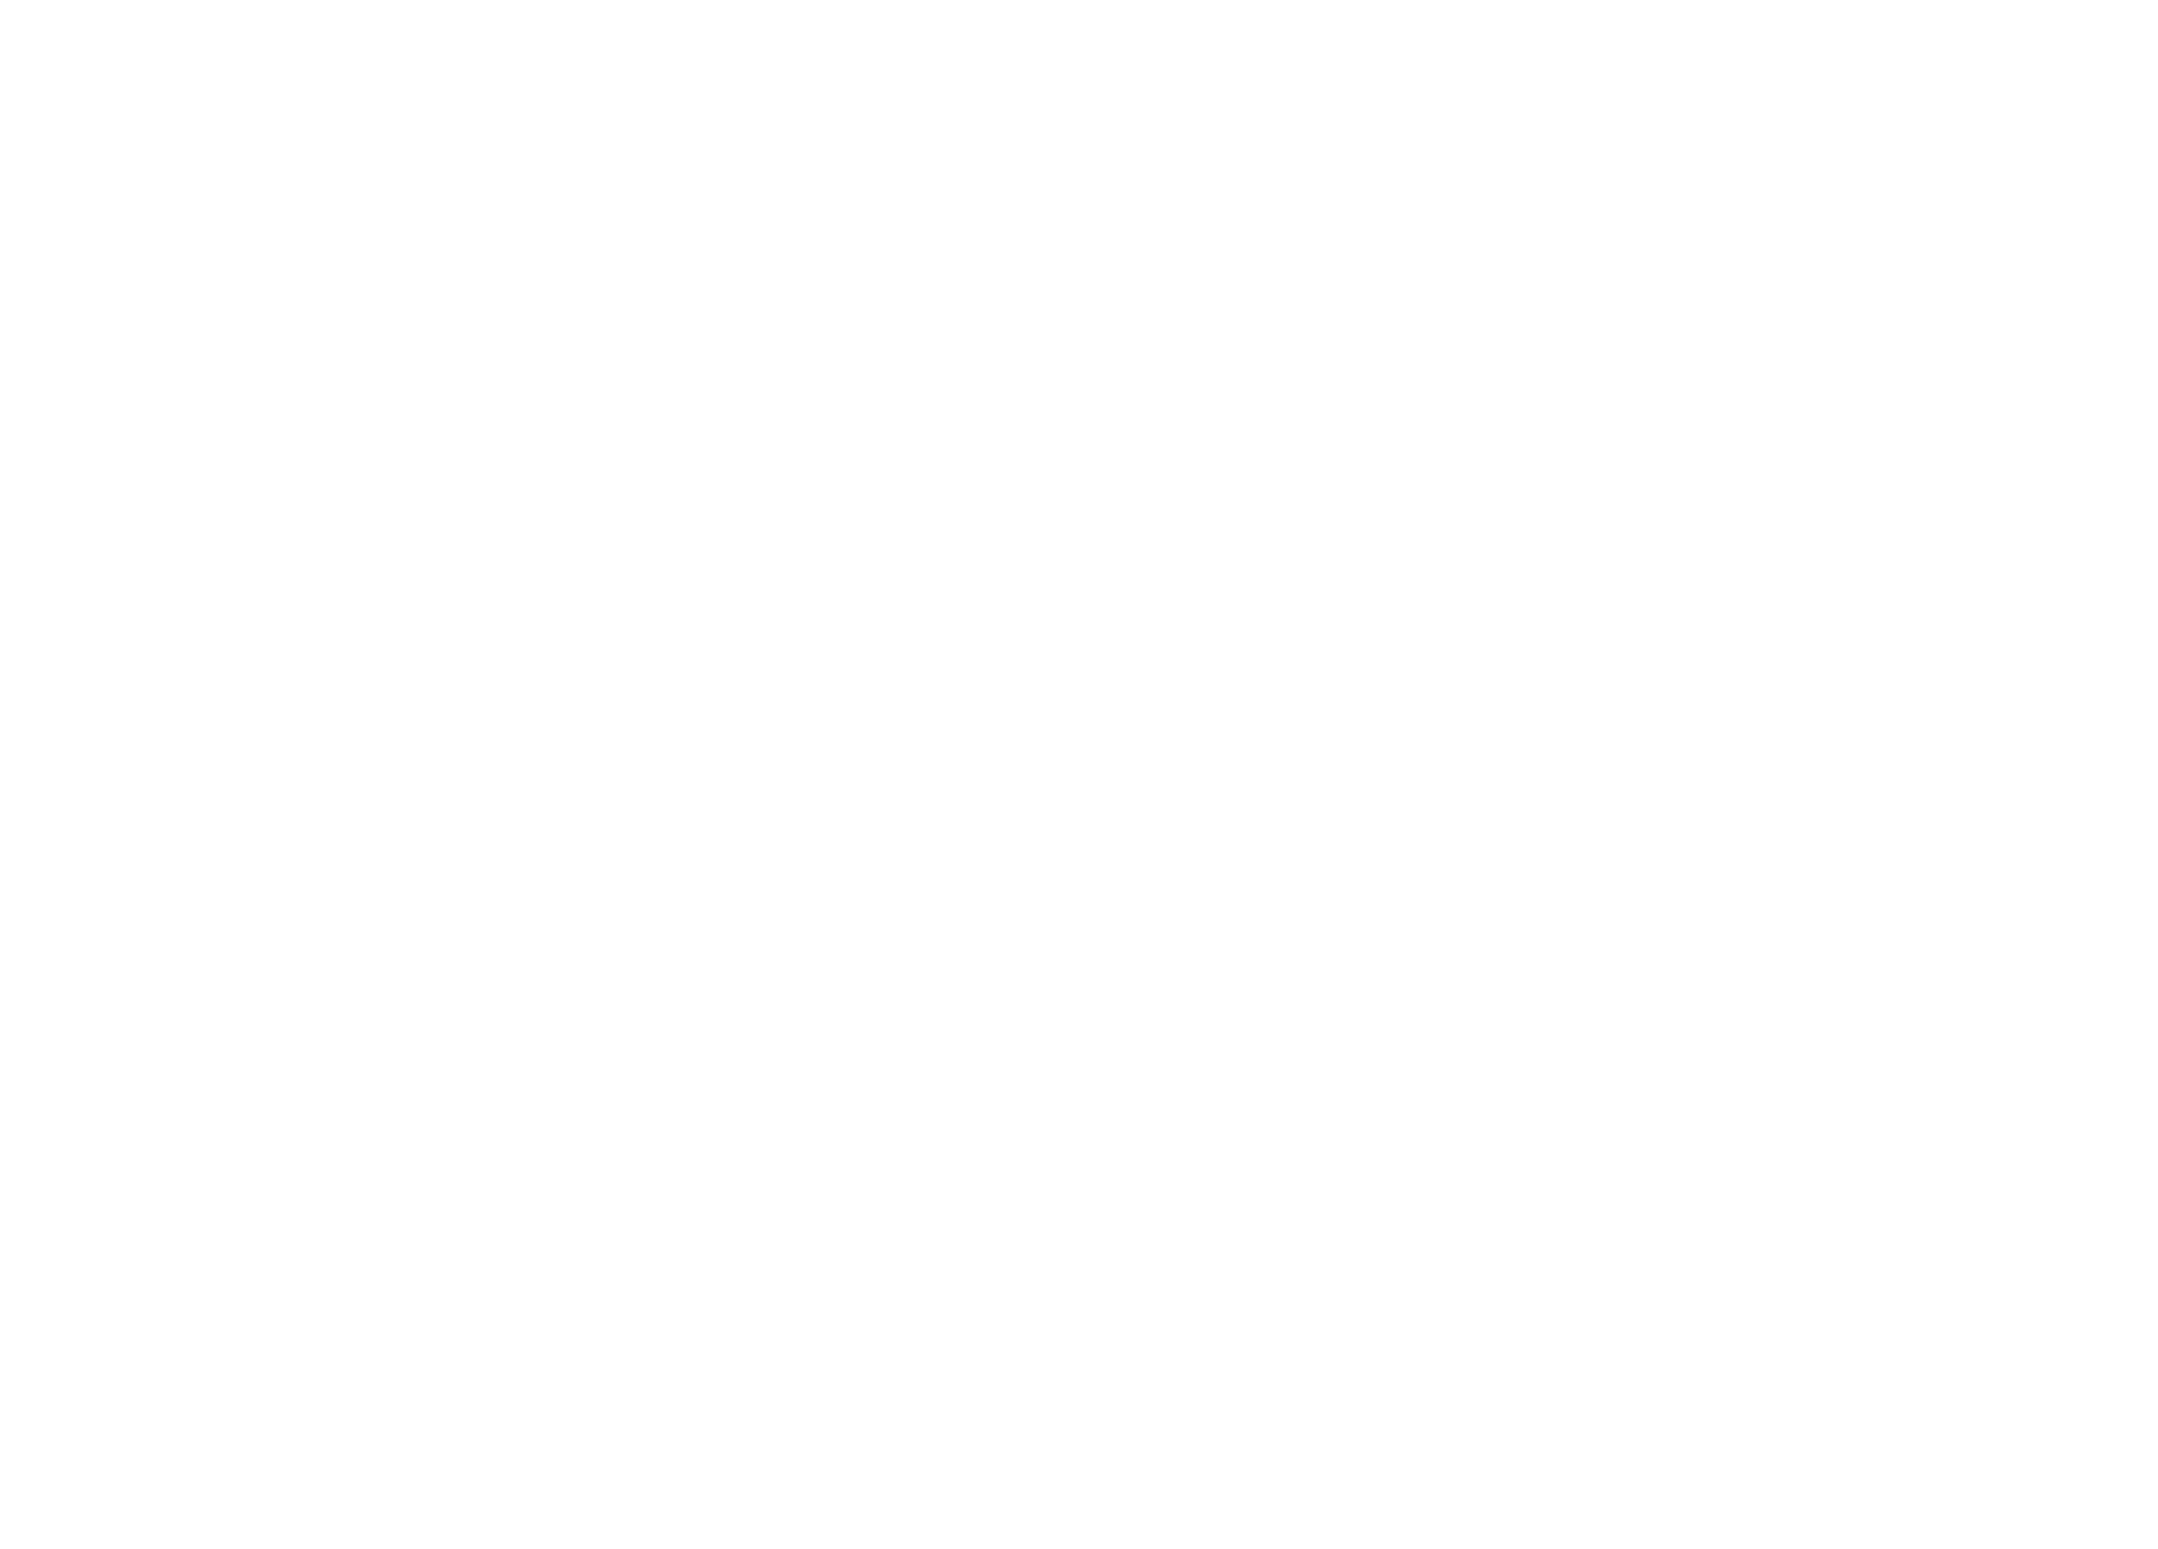 WebTech